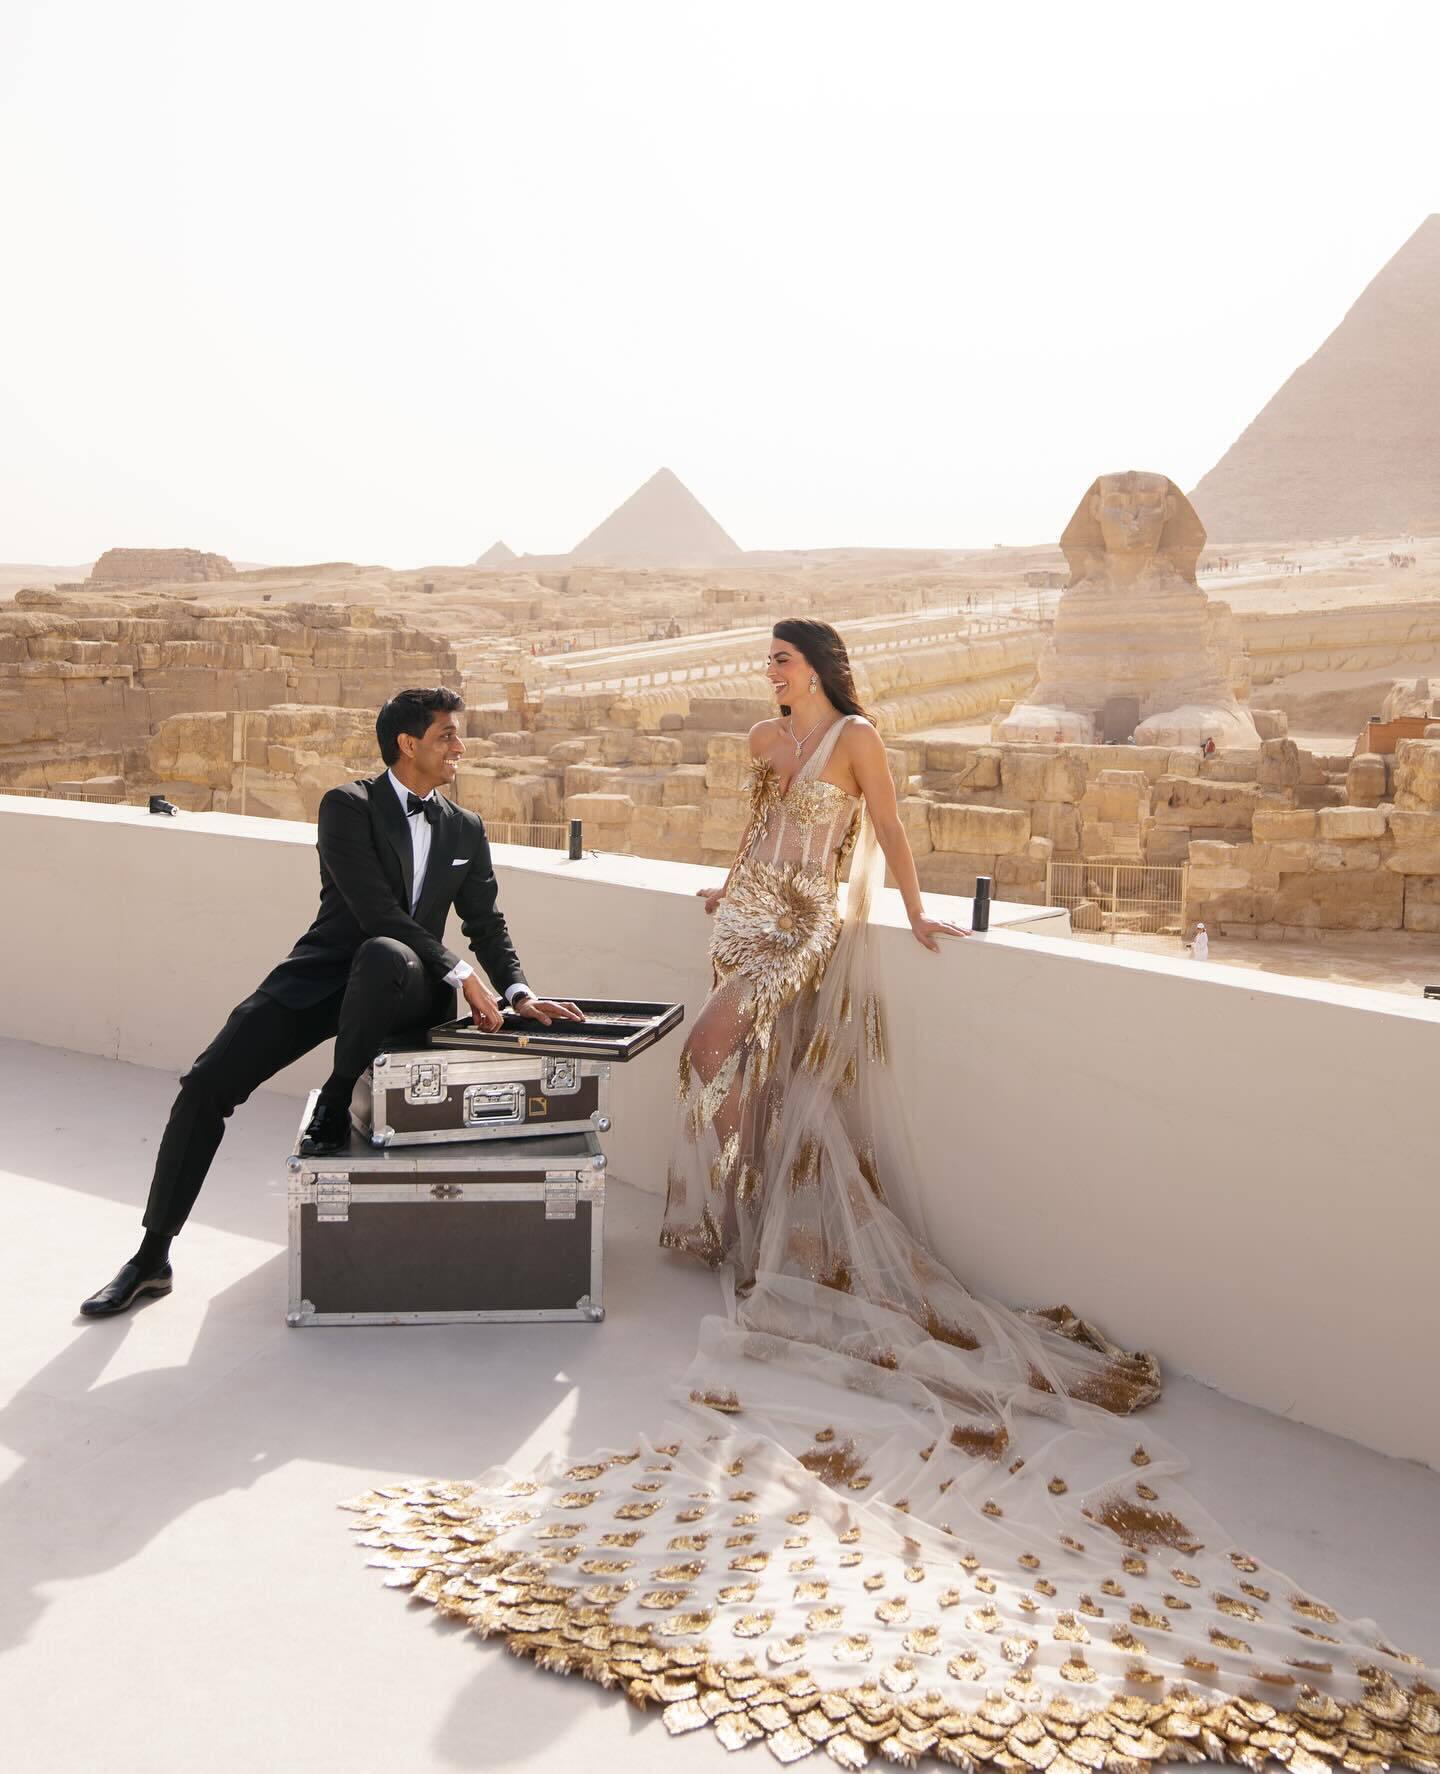 А могло бути в космосі. Американський мільярдер відсвяткував пишне весілля в Єгипті біля підніжжя пірамід